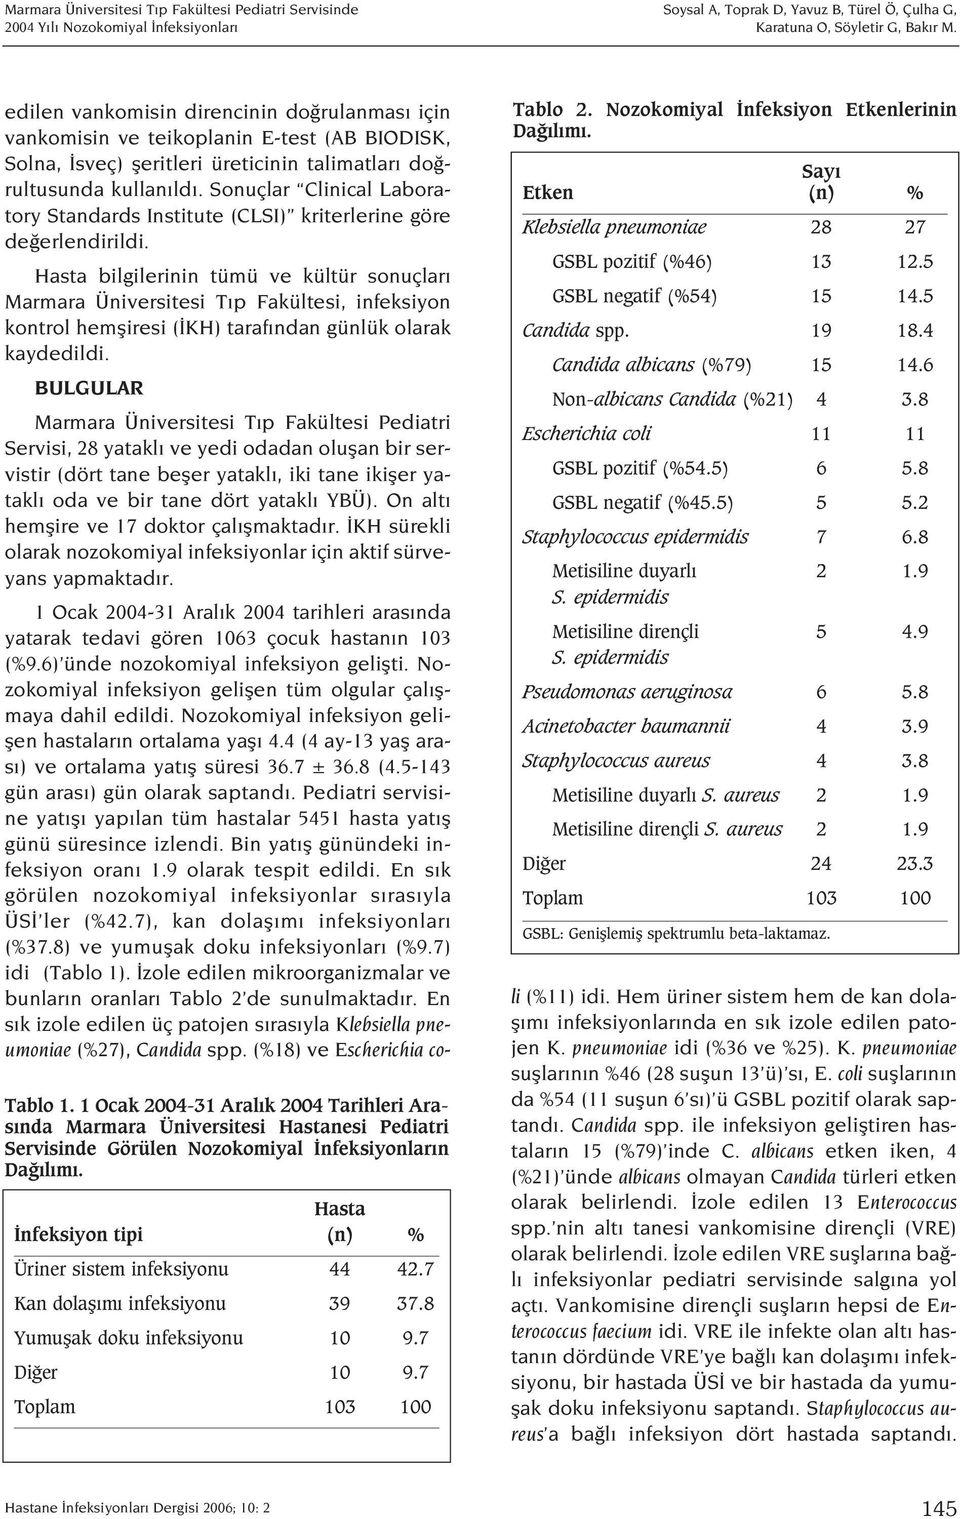 Nozokomiyal nfeksiyon Etkenlerinin Da l m. Say Etken (n) % Klebsiella pneumoniae 28 27 GSBL pozitif (%46) 13 12.5 GSBL negatif (%54) 15 14.5 Candida spp. 19 18.4 Candida albicans (%79) 15 14.